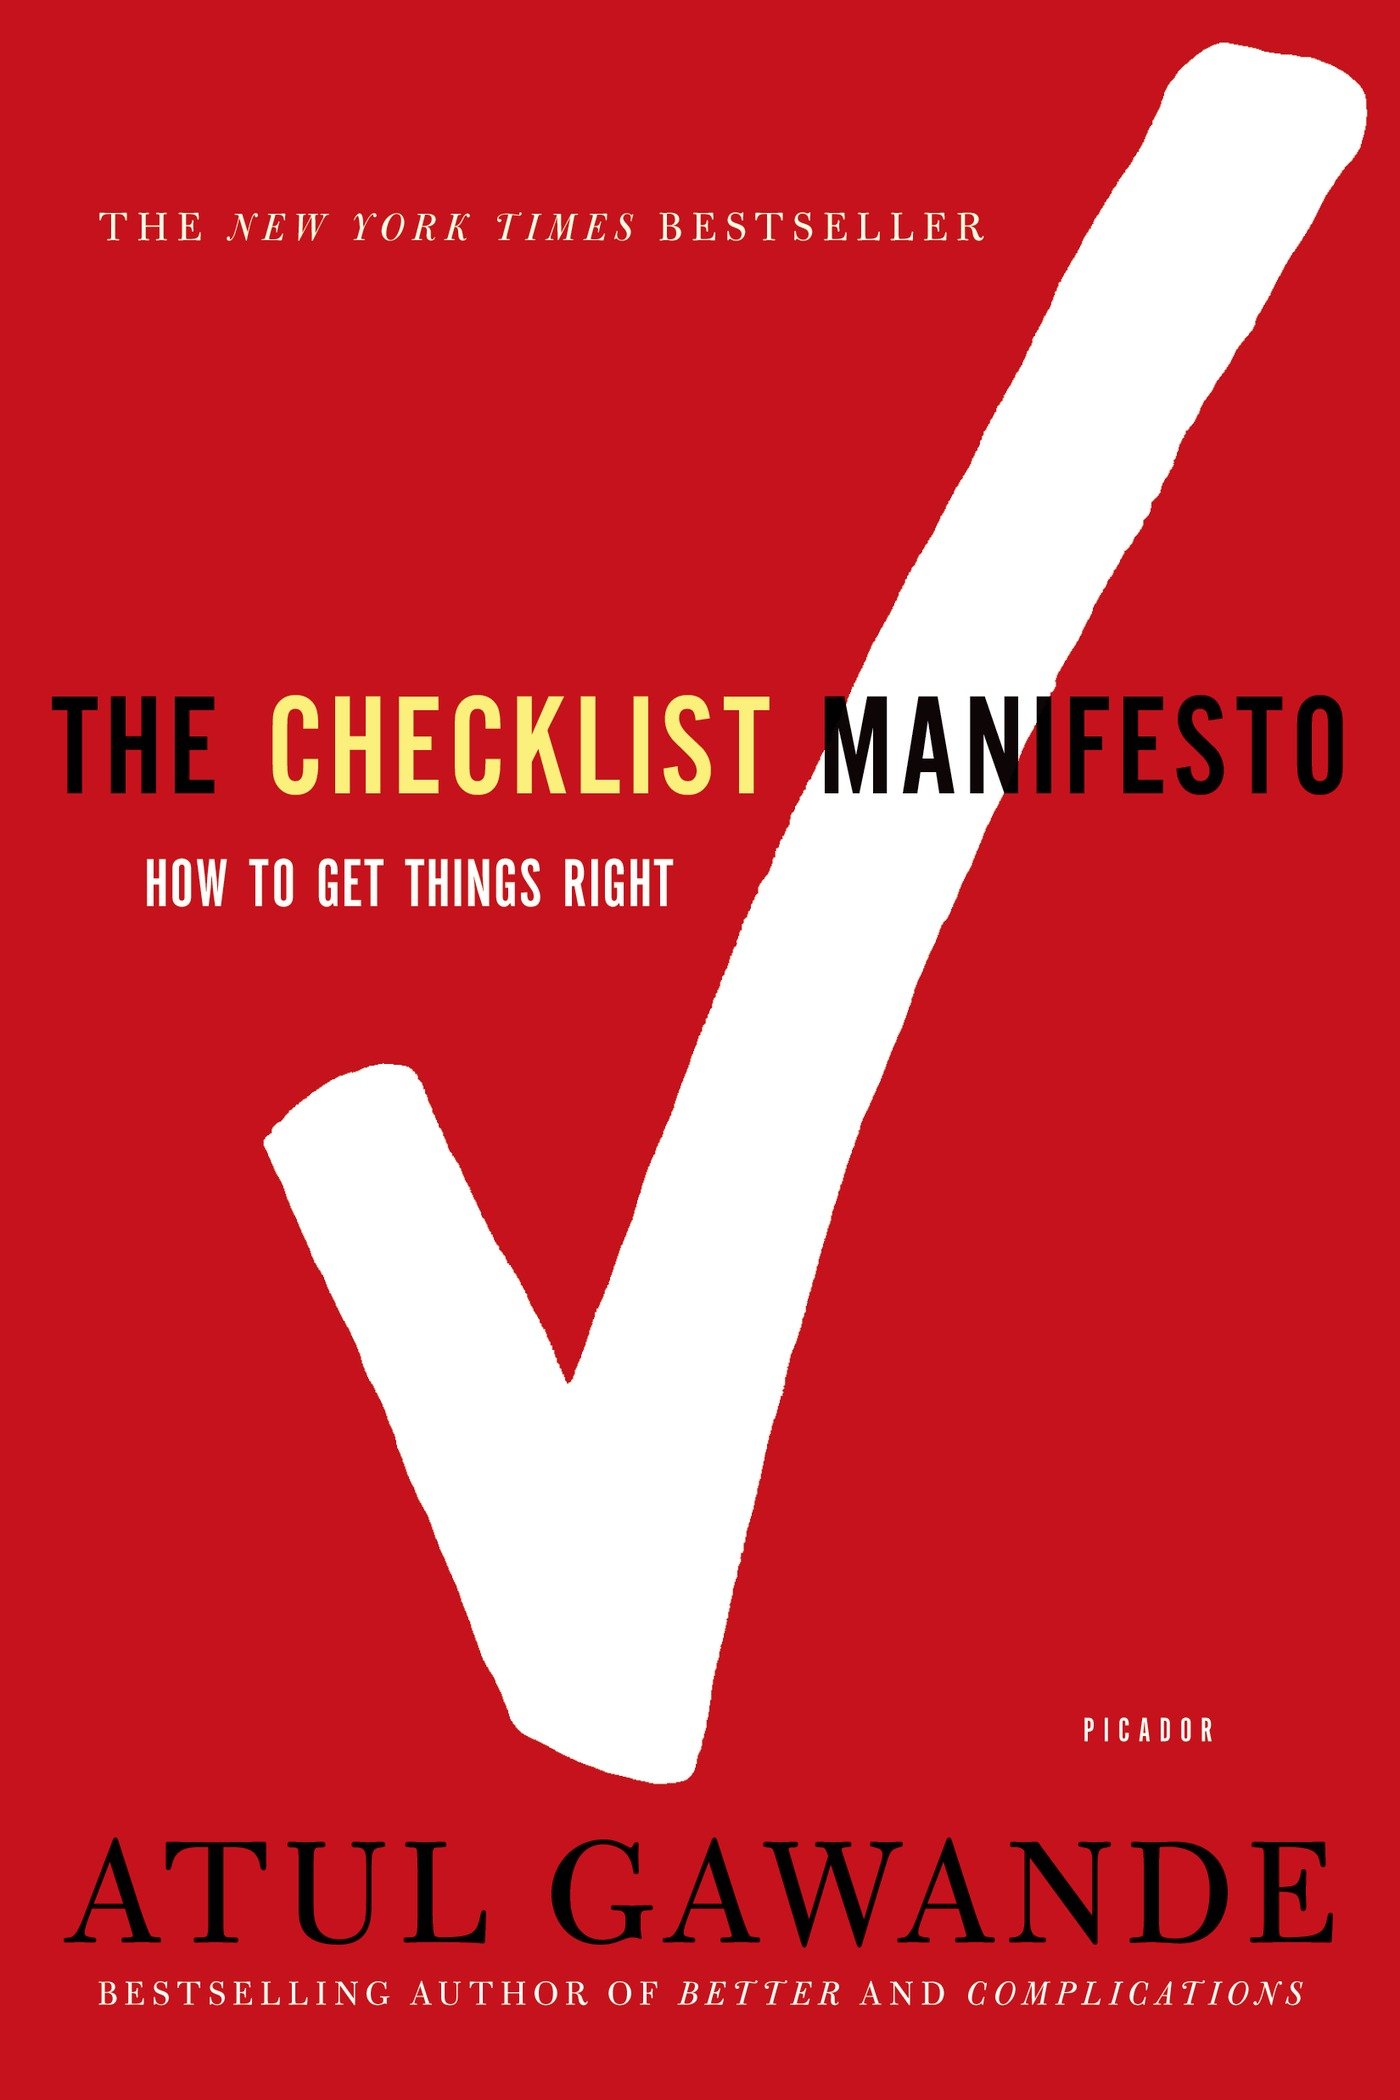 Friday Reads: The Checklist Manifesto by Atul Gawande